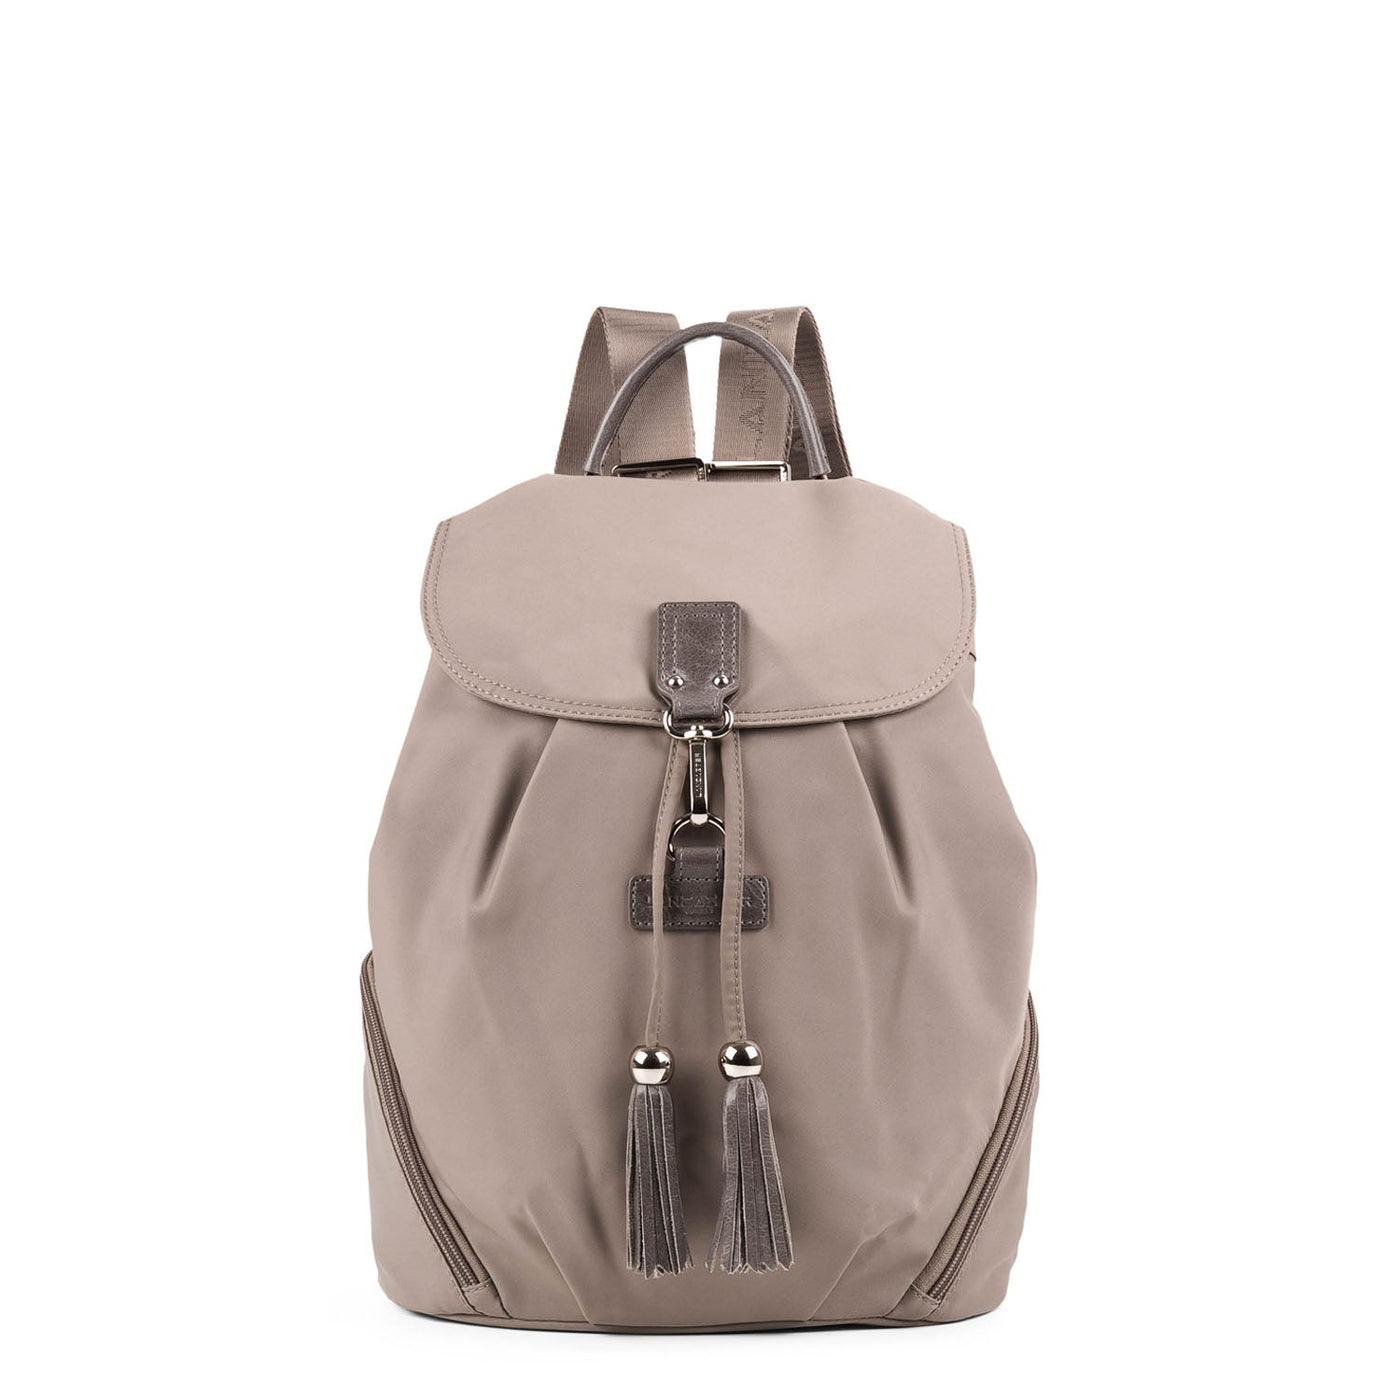 backpack - basic pompon #couleur_galet